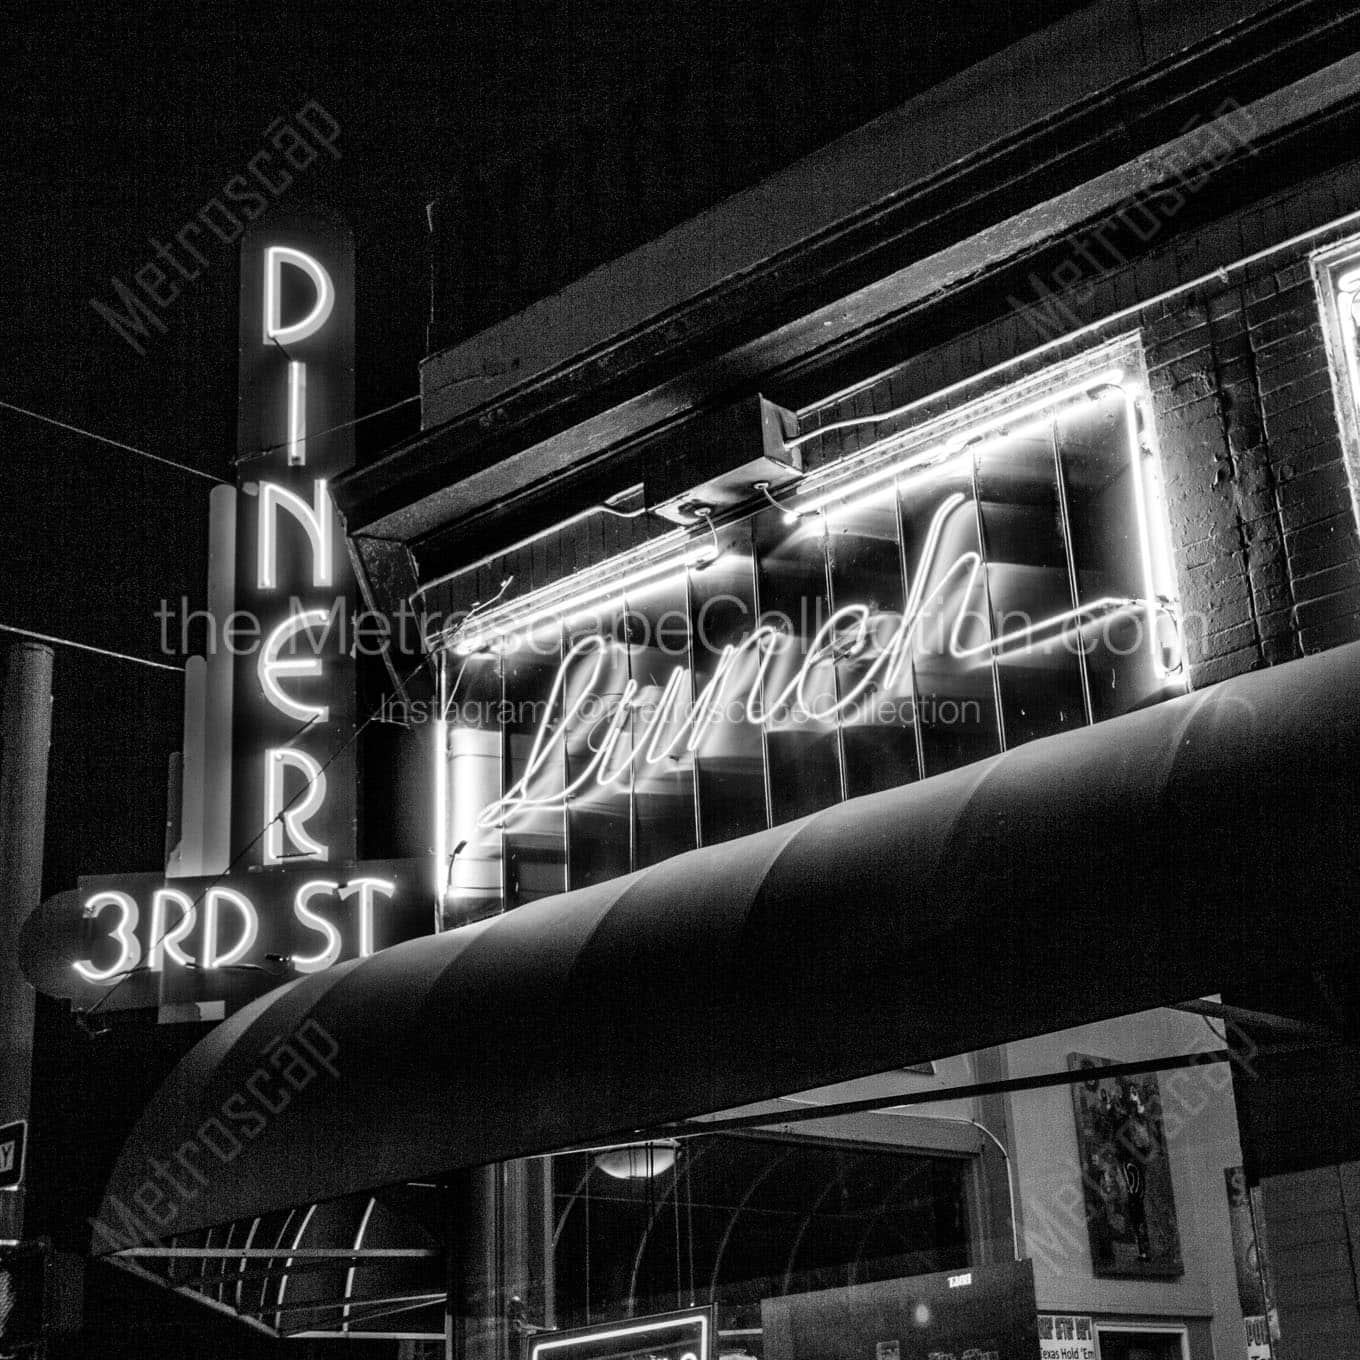 3rd street diner at night Black & White Office Art